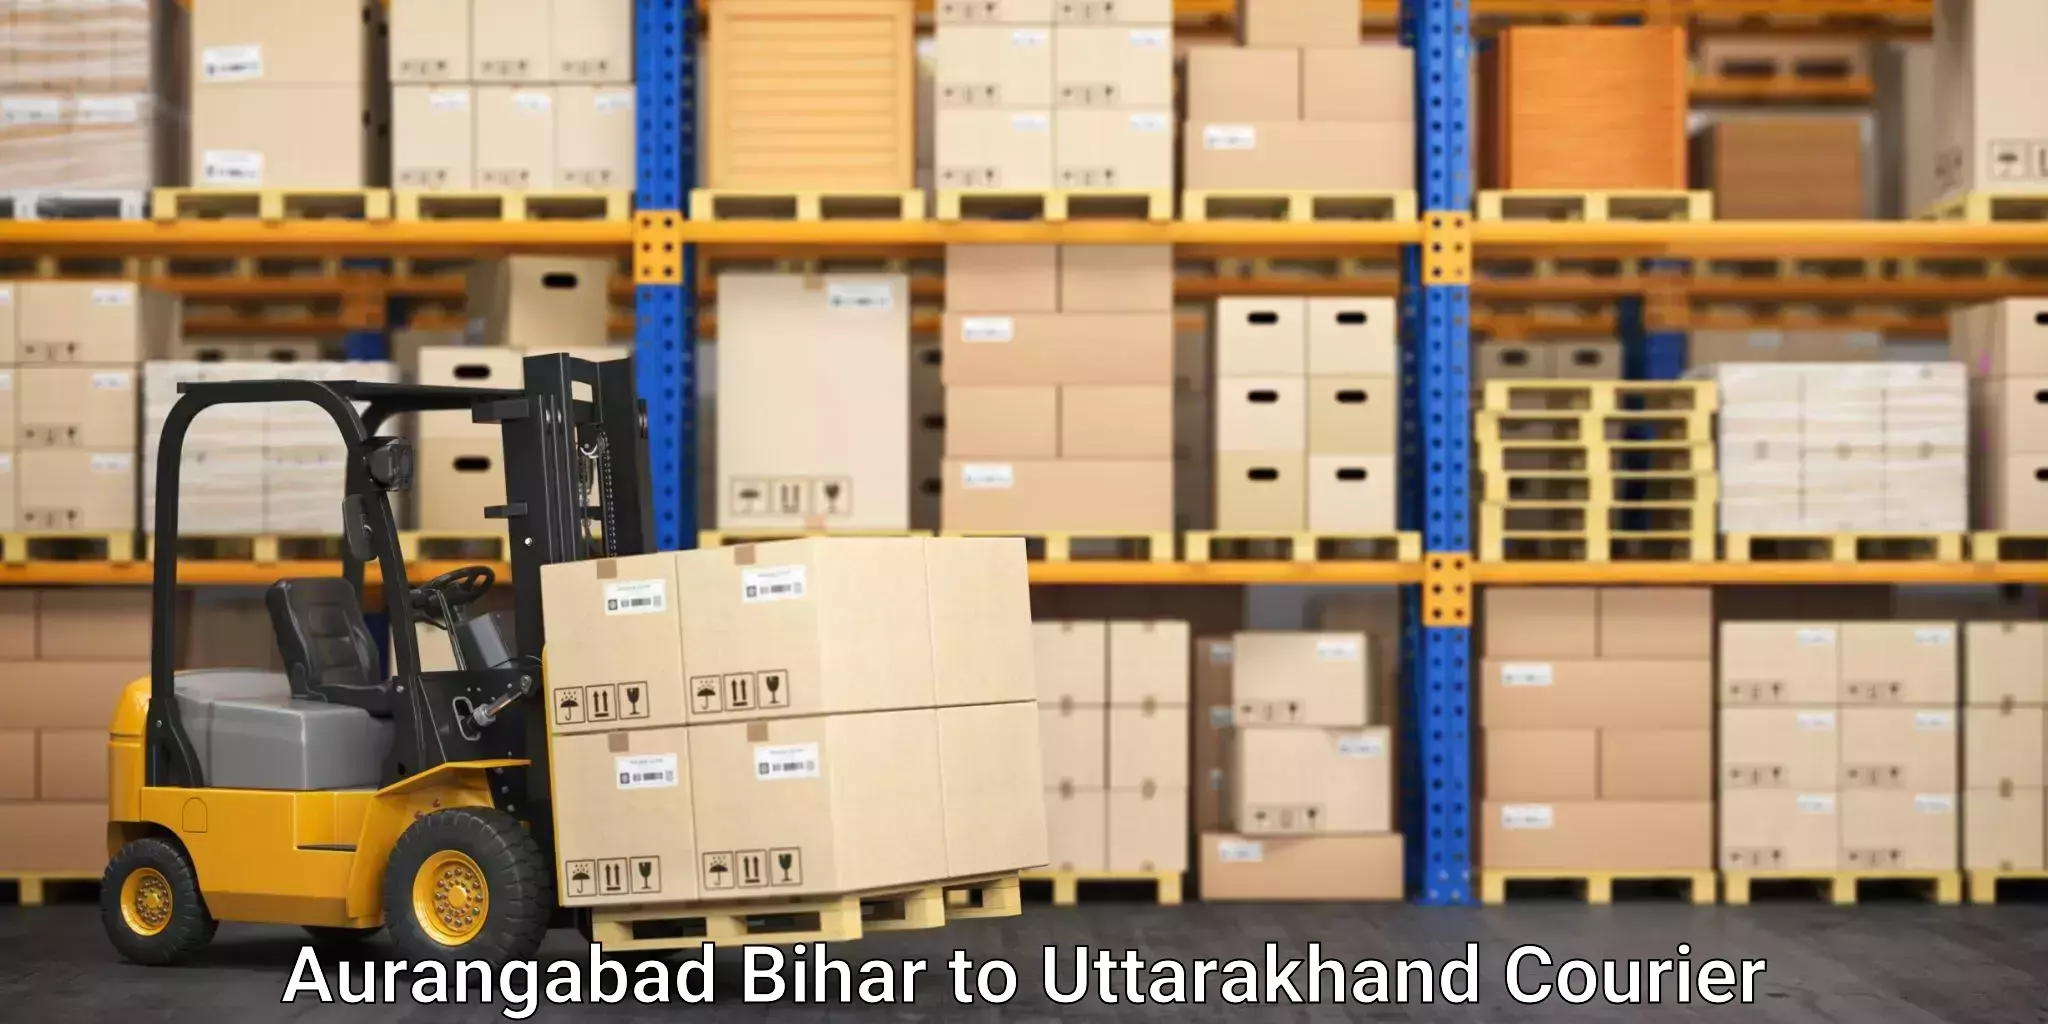 Efficient moving company Aurangabad Bihar to Nainital